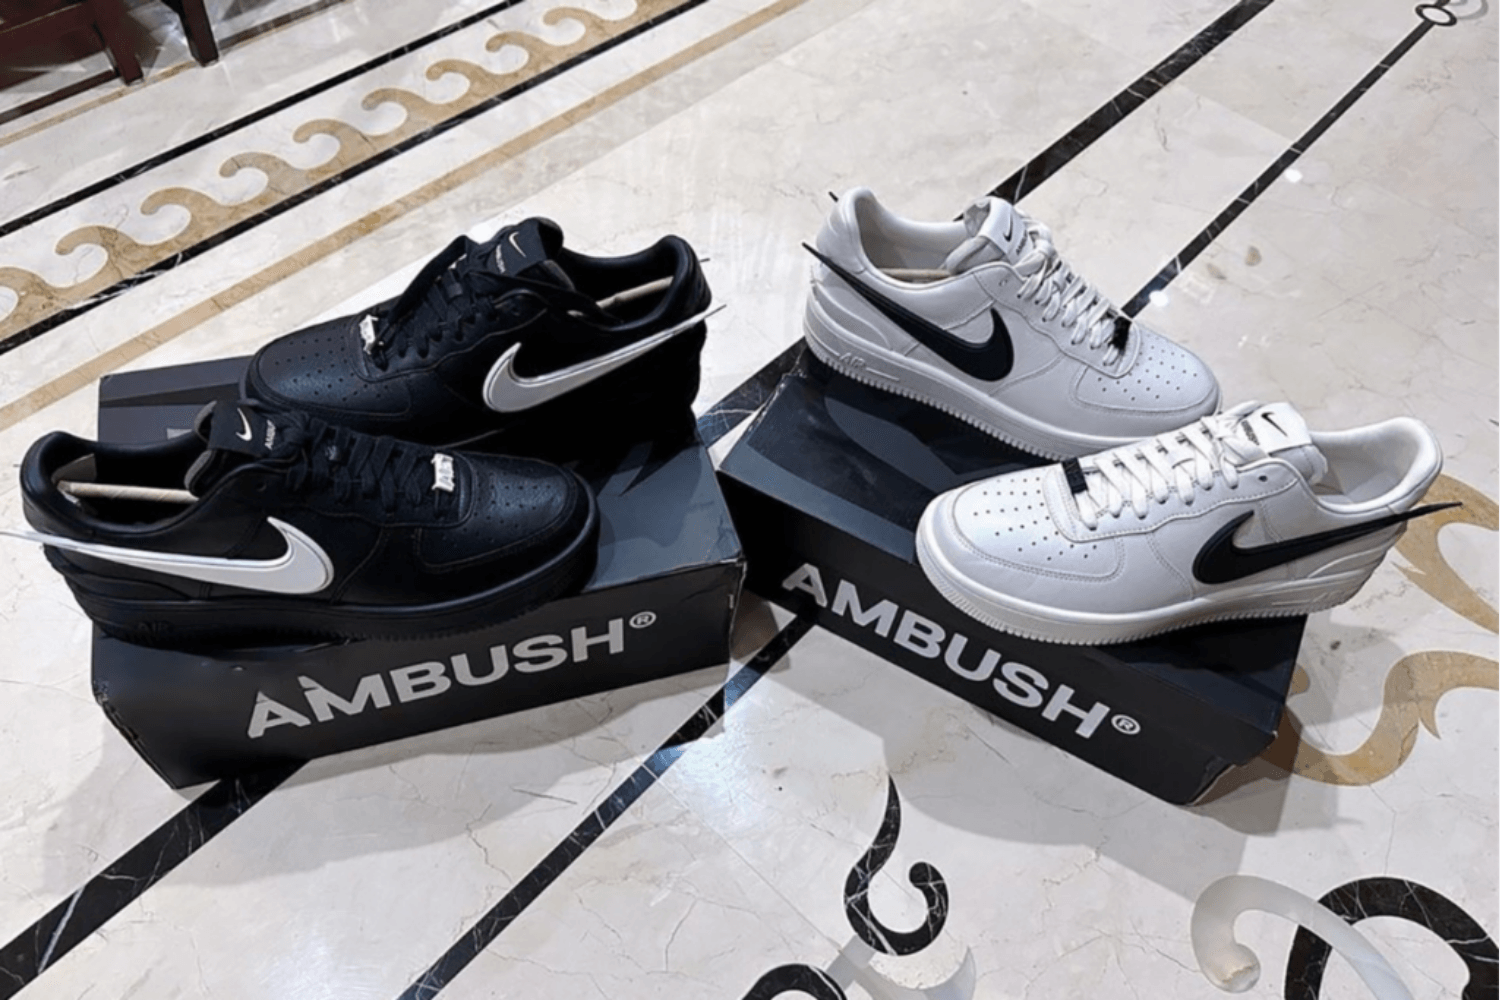 AMBUSH x Nike Air Force 1 Low kommt in drei Colorways